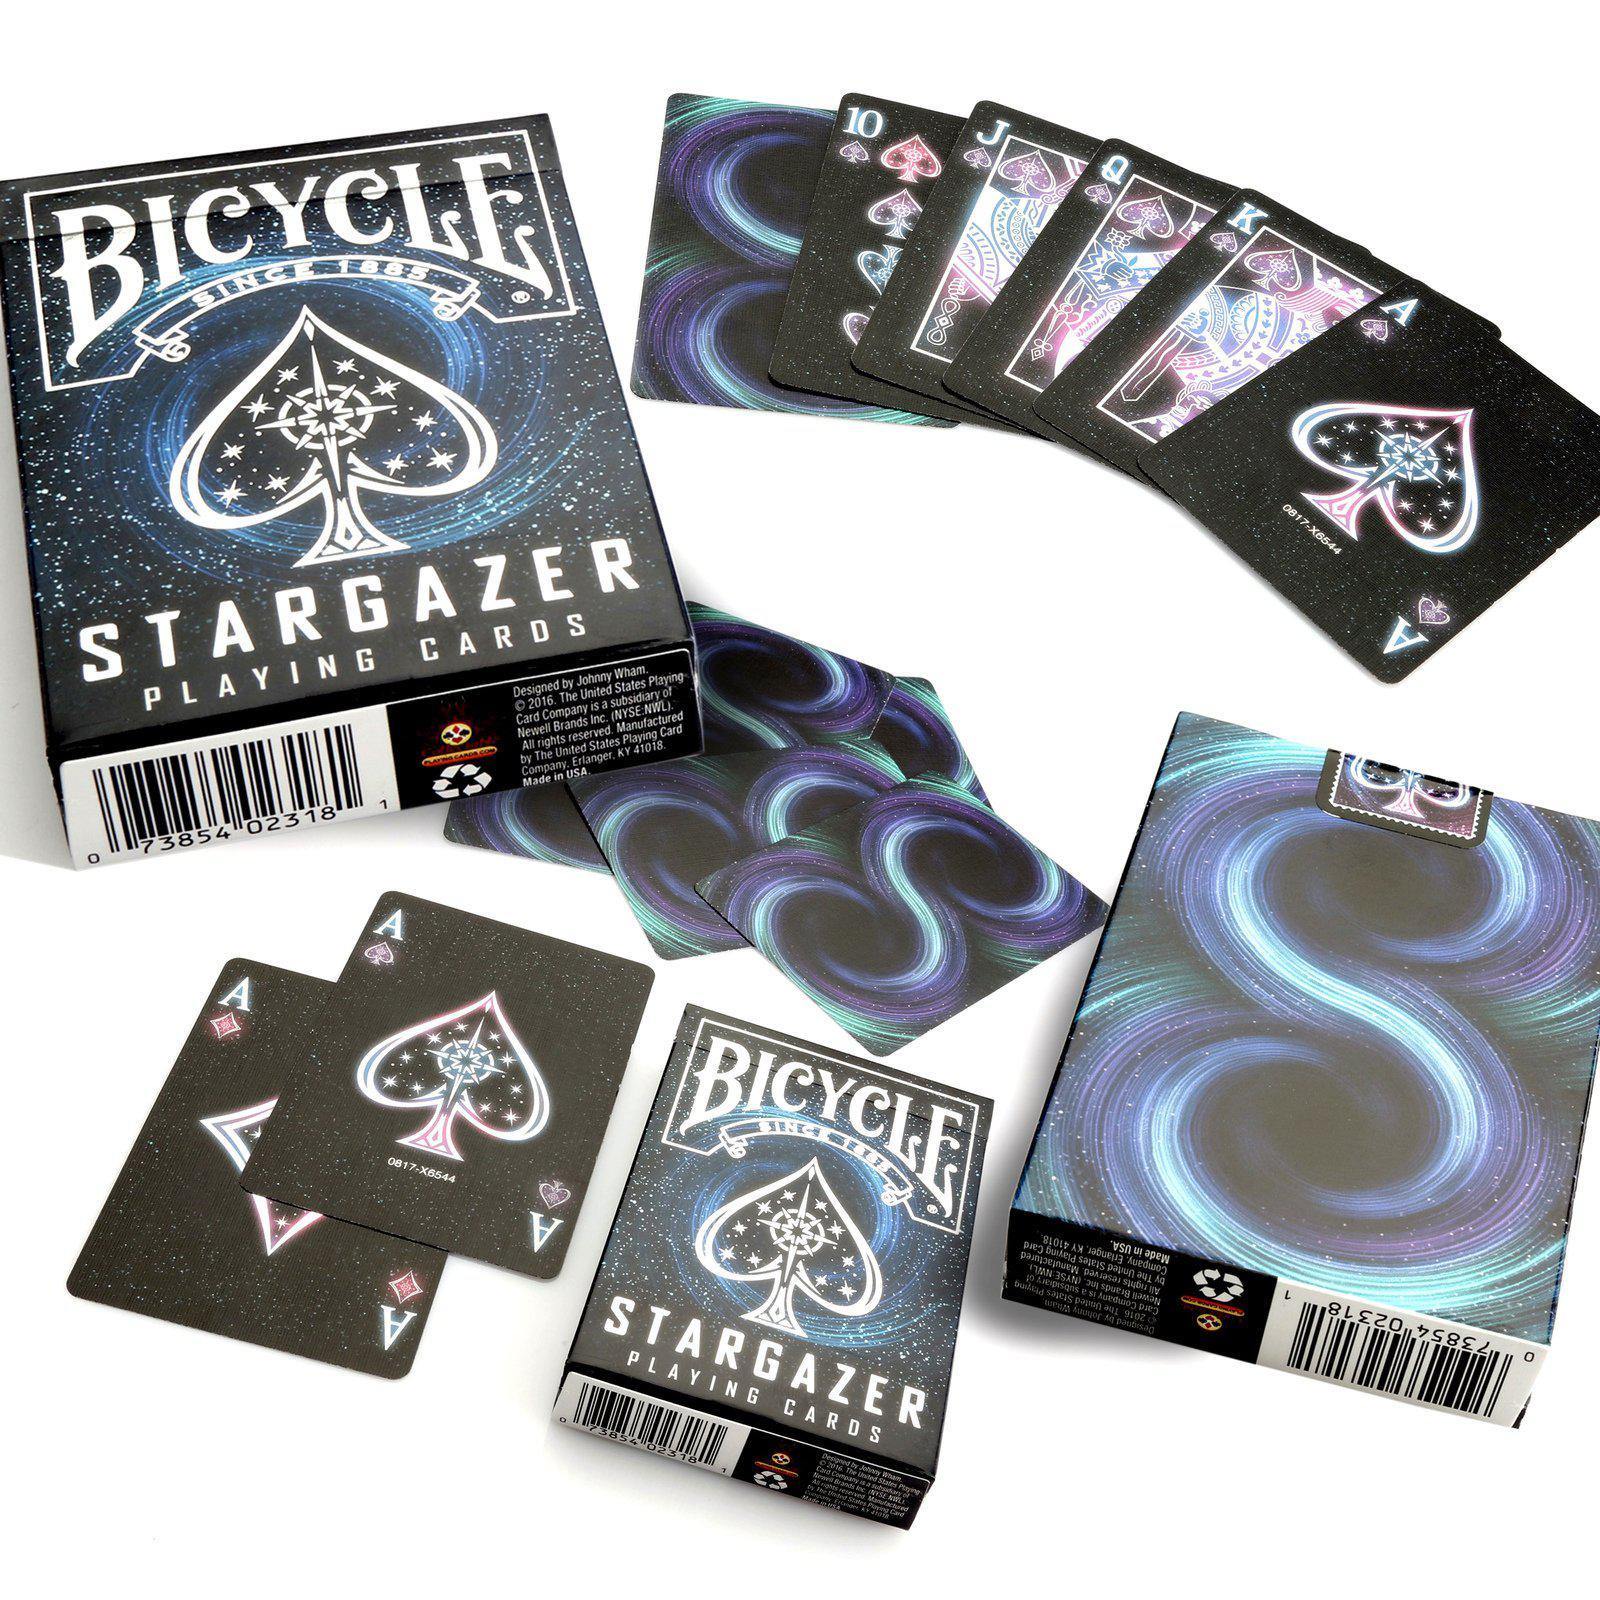 Bicycle Stargazer-bicycle-3-Játszma.ro - A maradandó élmények boltja